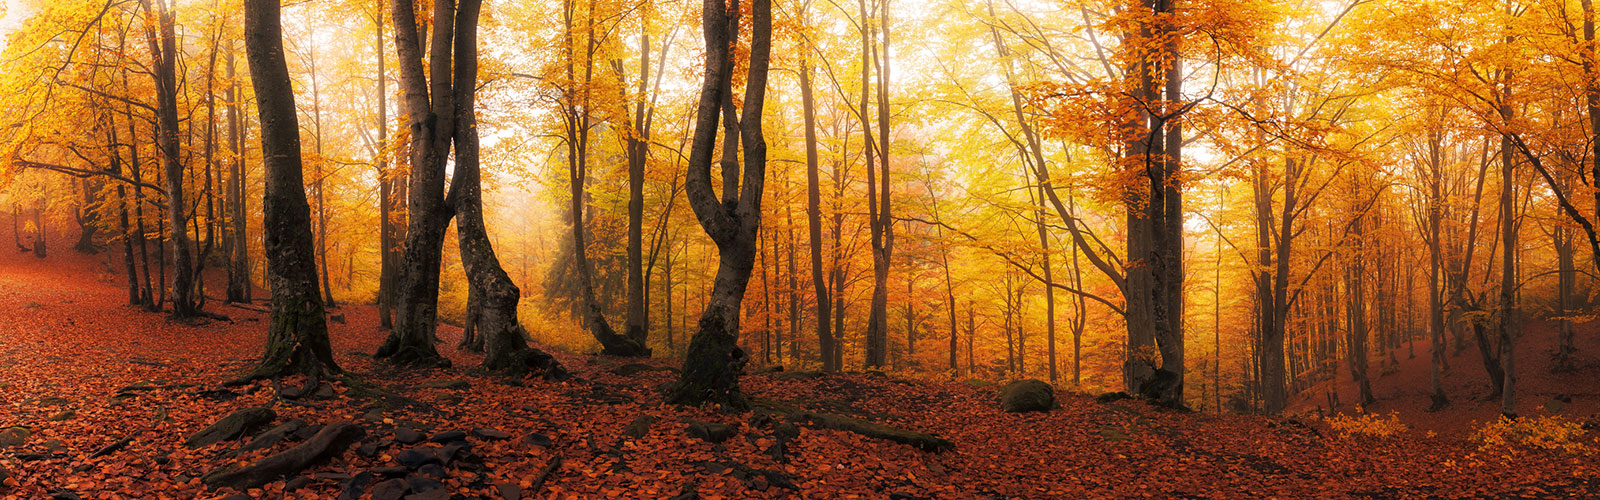 autumn forest banner